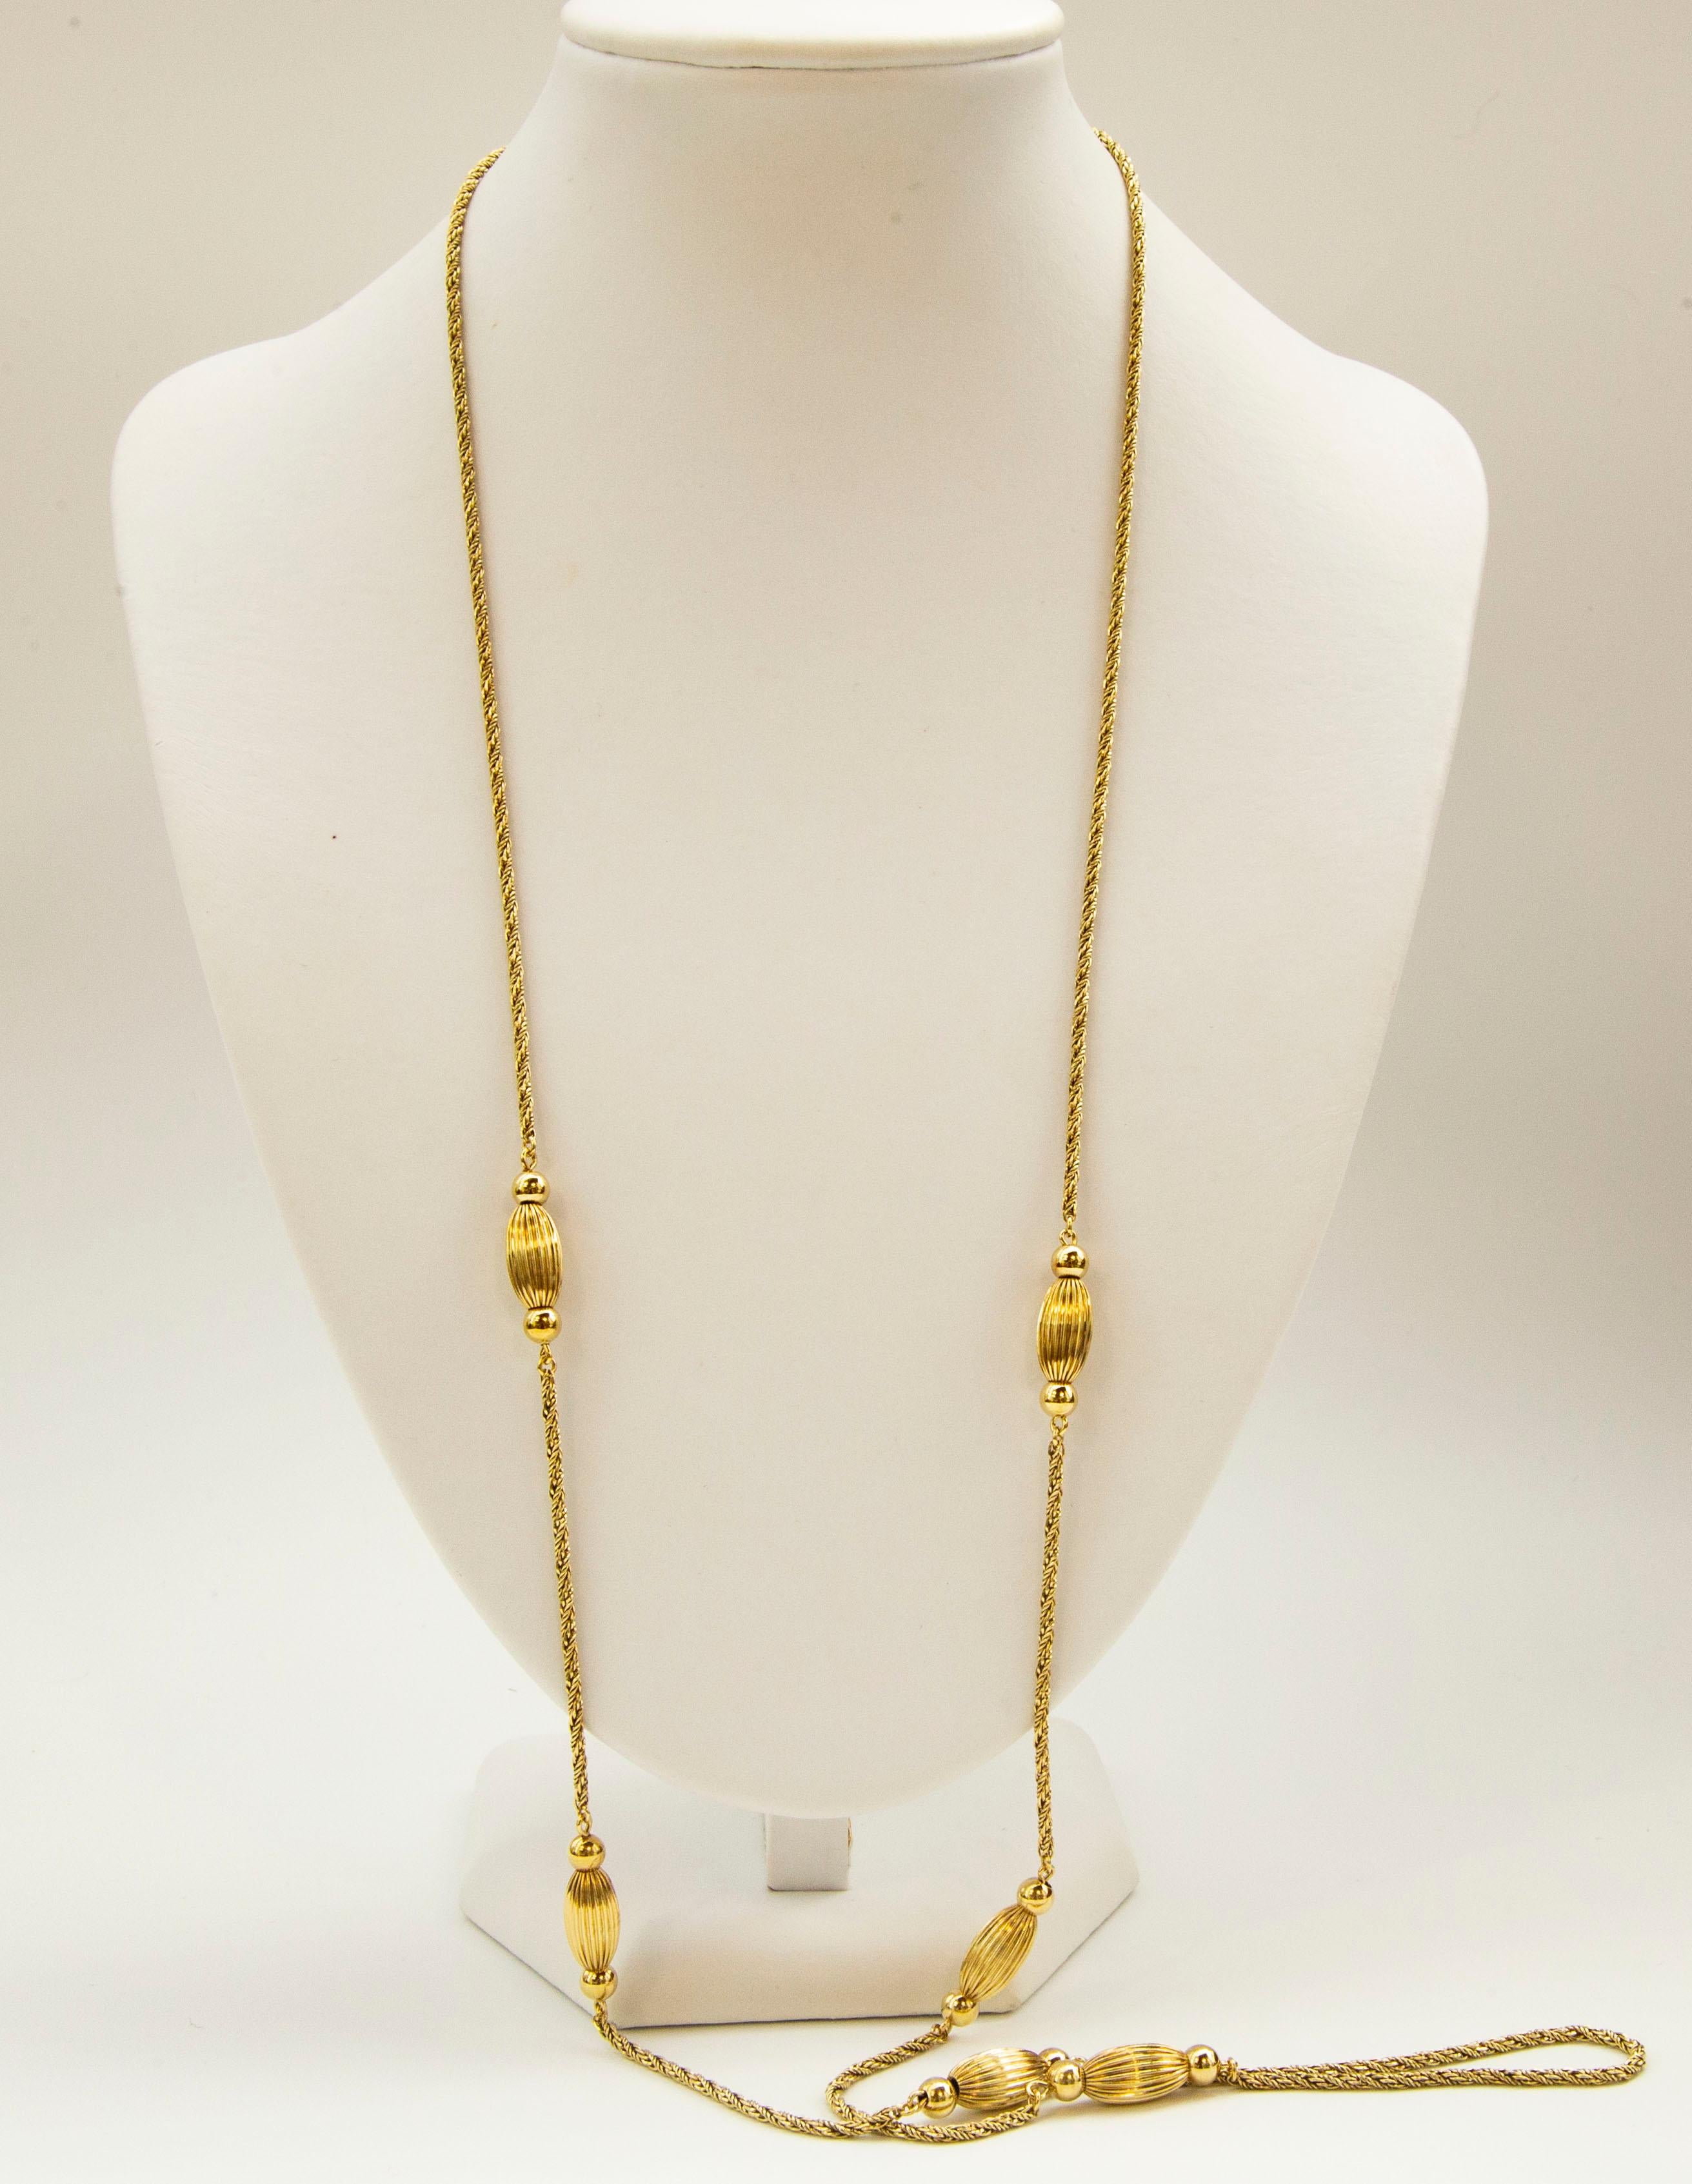 Un collier vintage en or jaune massif 14 carats avec des sphères nervurées et des boules de forme ovale. Le collier est composé d'une double chaîne en corde et se ferme à l'aide d'un fermoir à anneau à ressort.  
Le collier a une apparence élégante